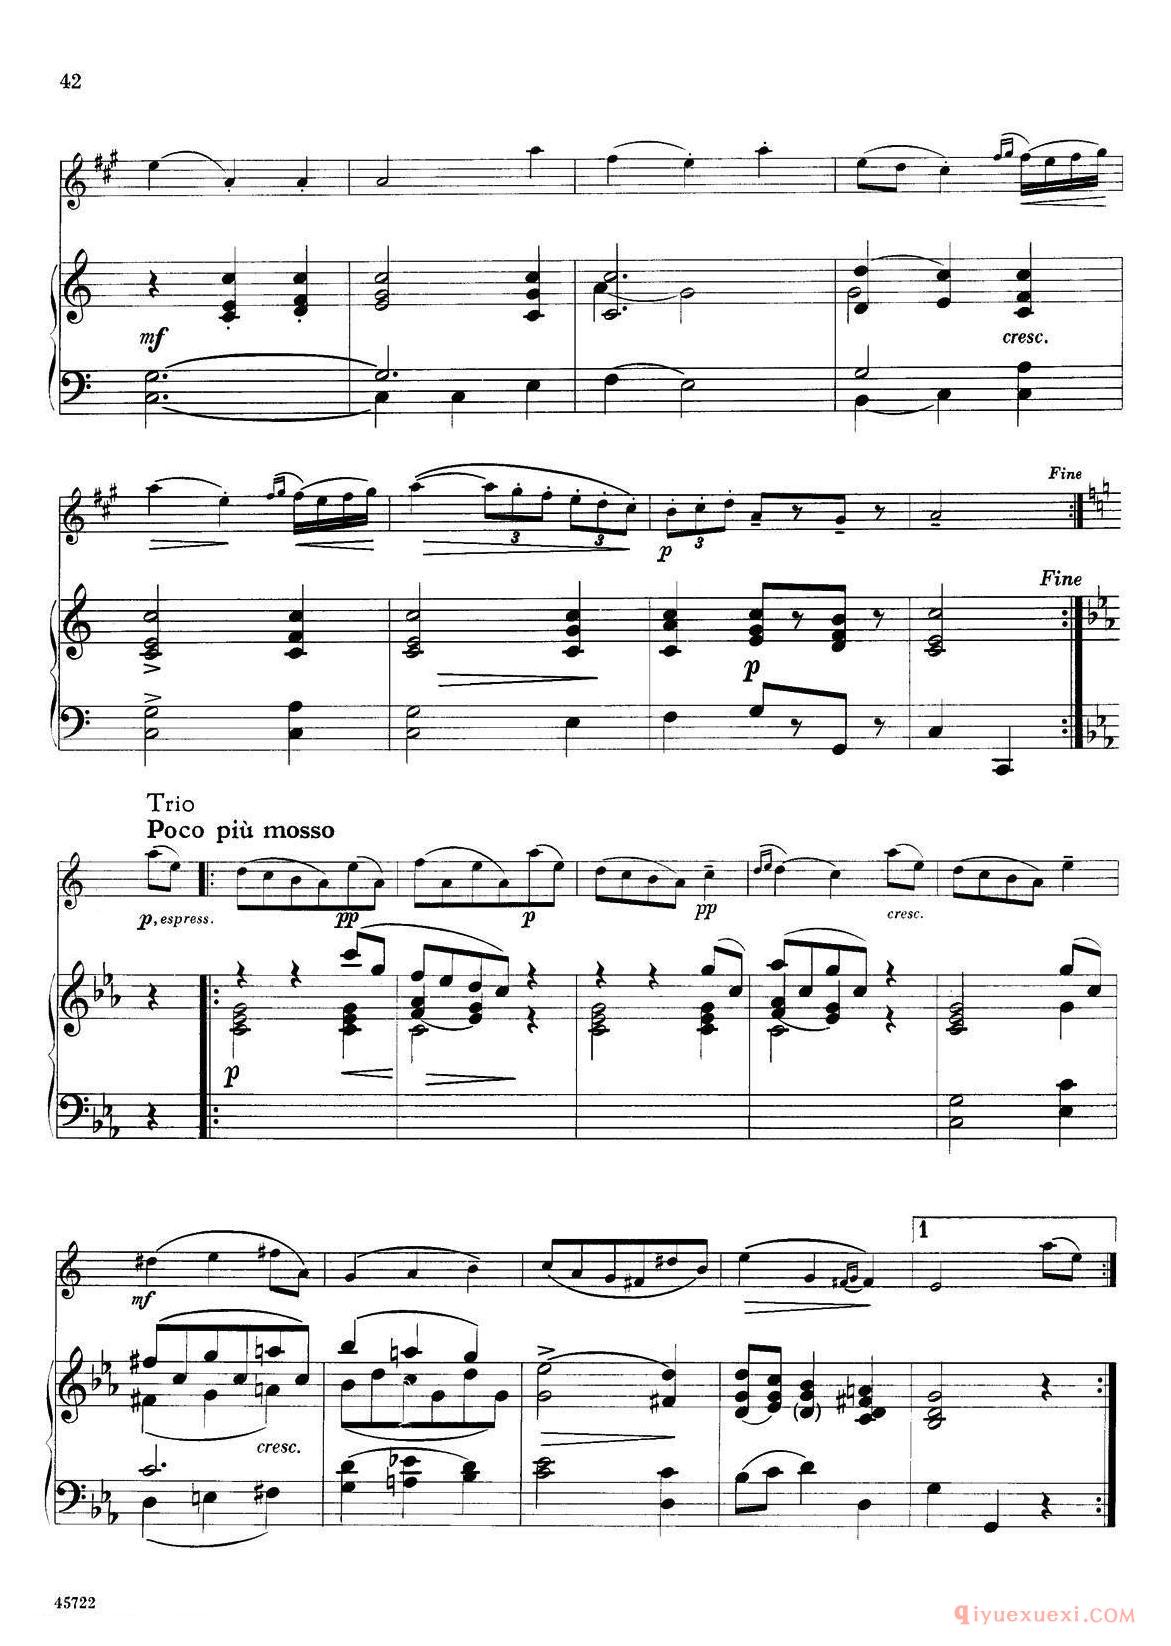 15首古典萨克斯独奏曲《9、Minuet》中音萨克斯+钢琴伴奏